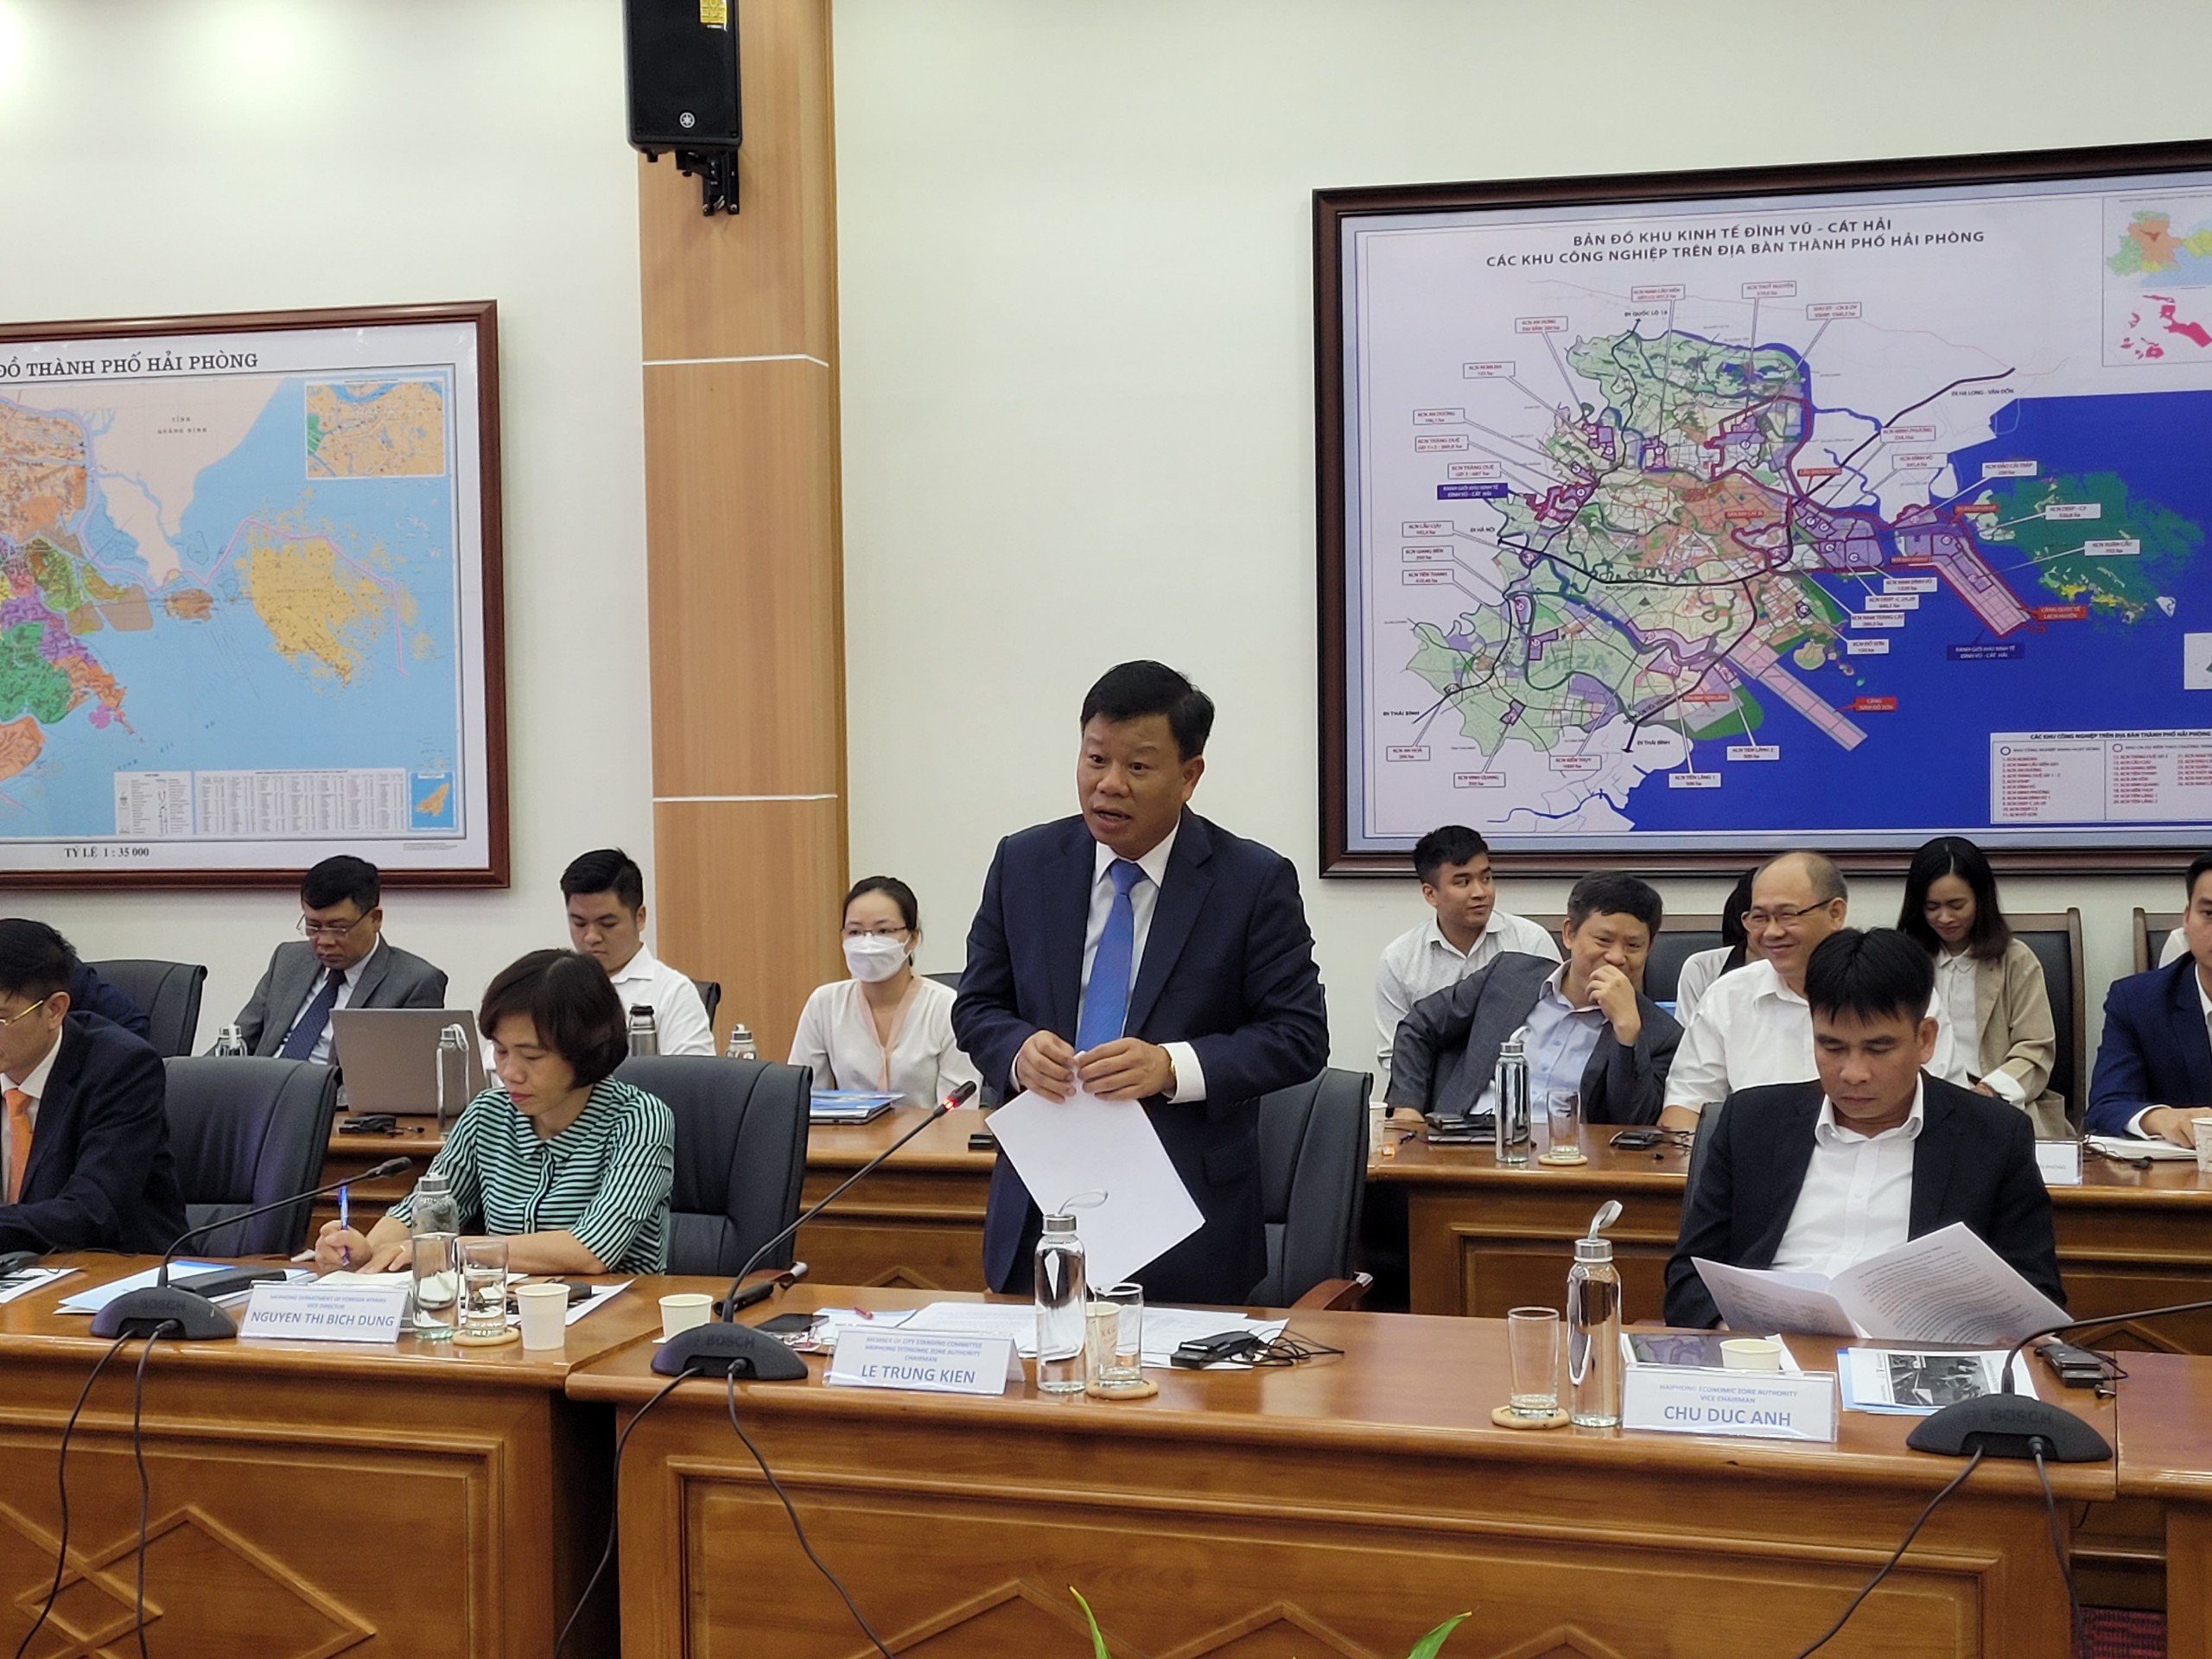 Ông Lê Trung Kiên, Trưởng ban Ban Quản lý Khu kinh tế Hải Phòng phát biểu tại cuộc làm việc